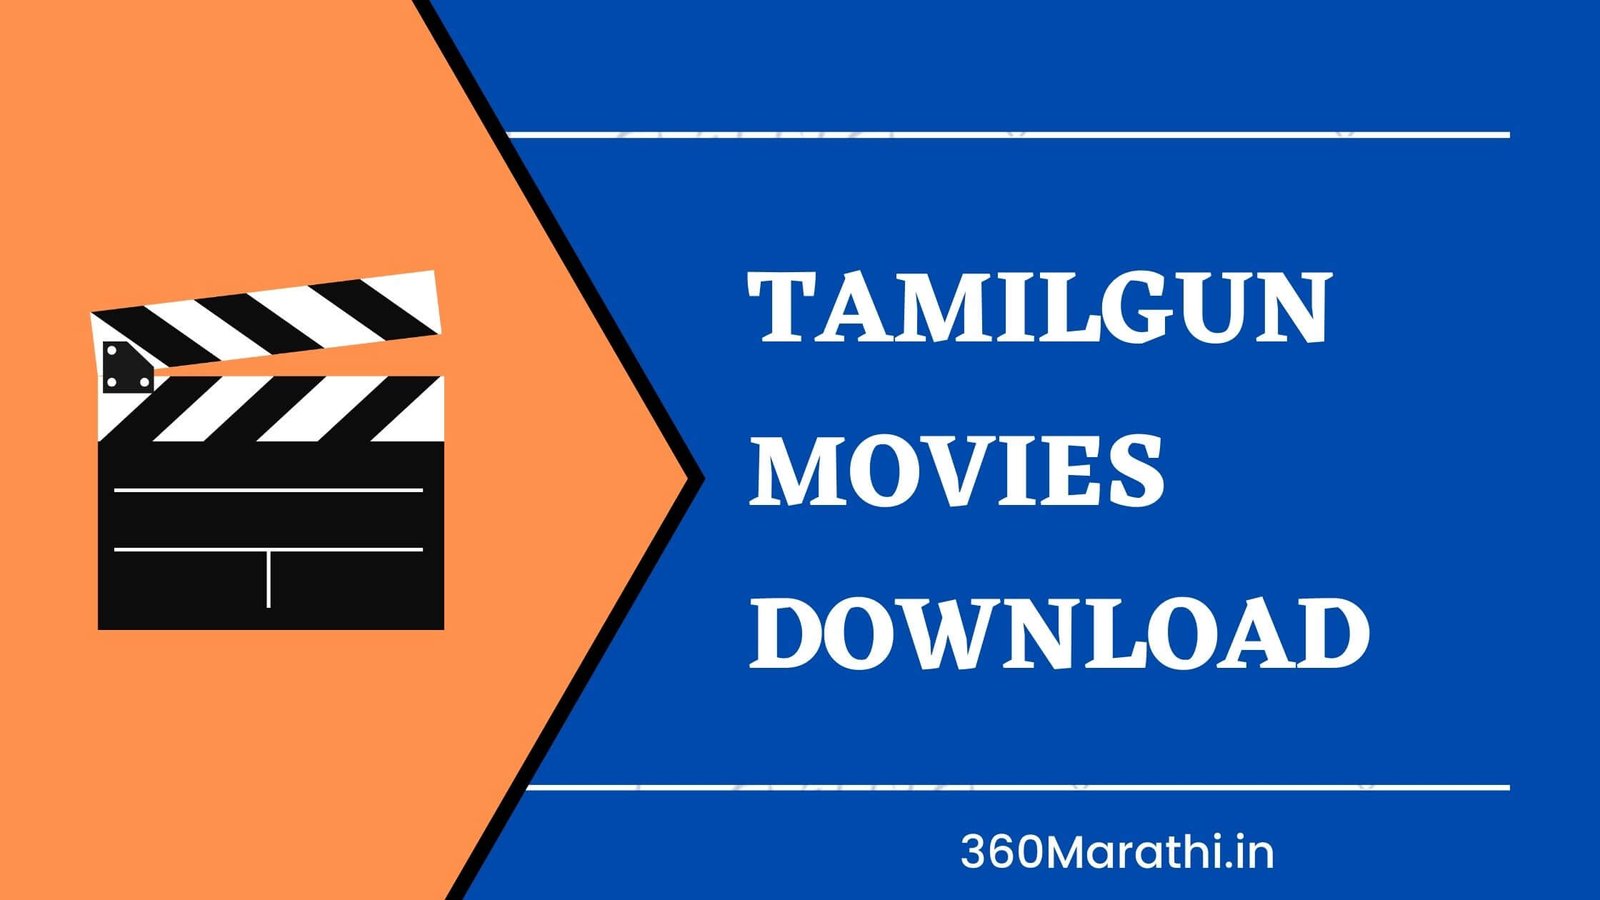 Tamilgun Movies Download